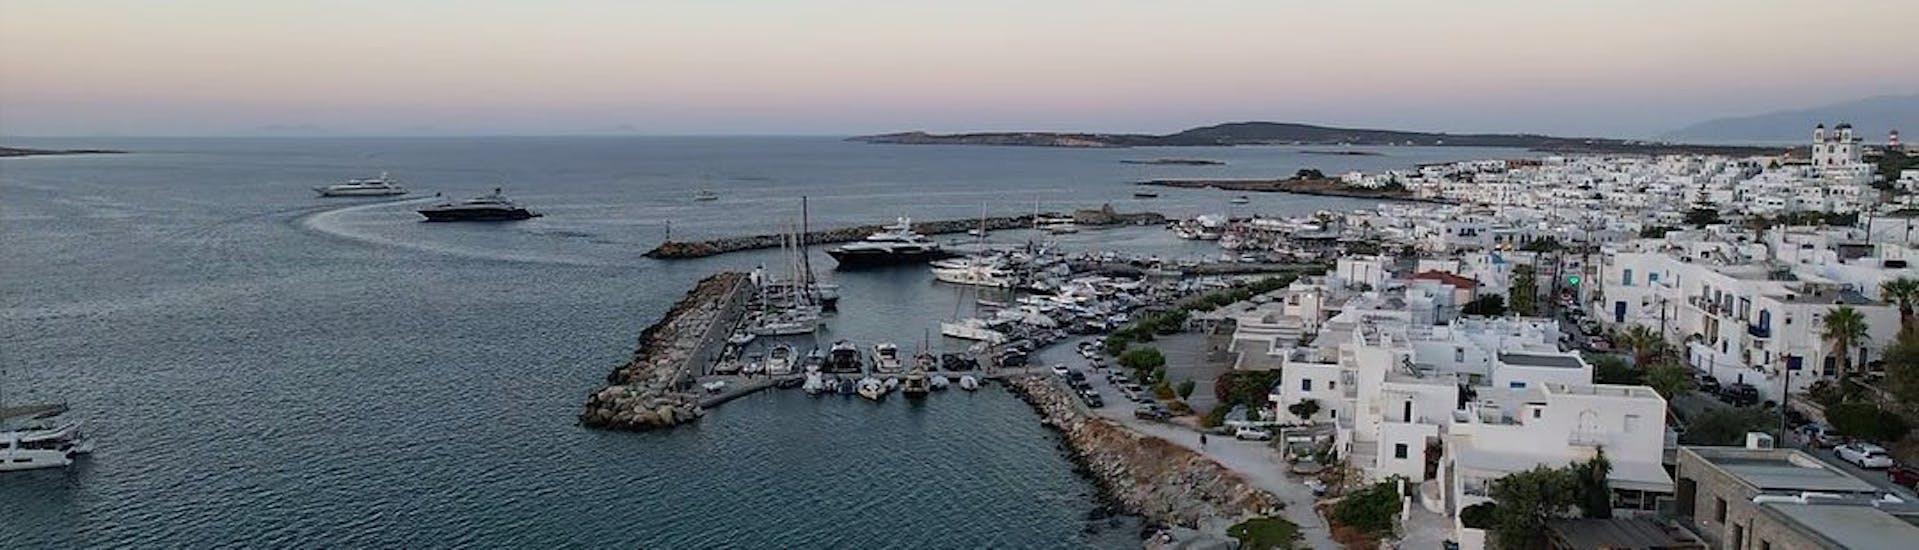 Uitzicht op Athene tijdens de zonsondergang tijdens de privé-zonsondergangsboottocht vanuit Athene met diner en snorkelen.